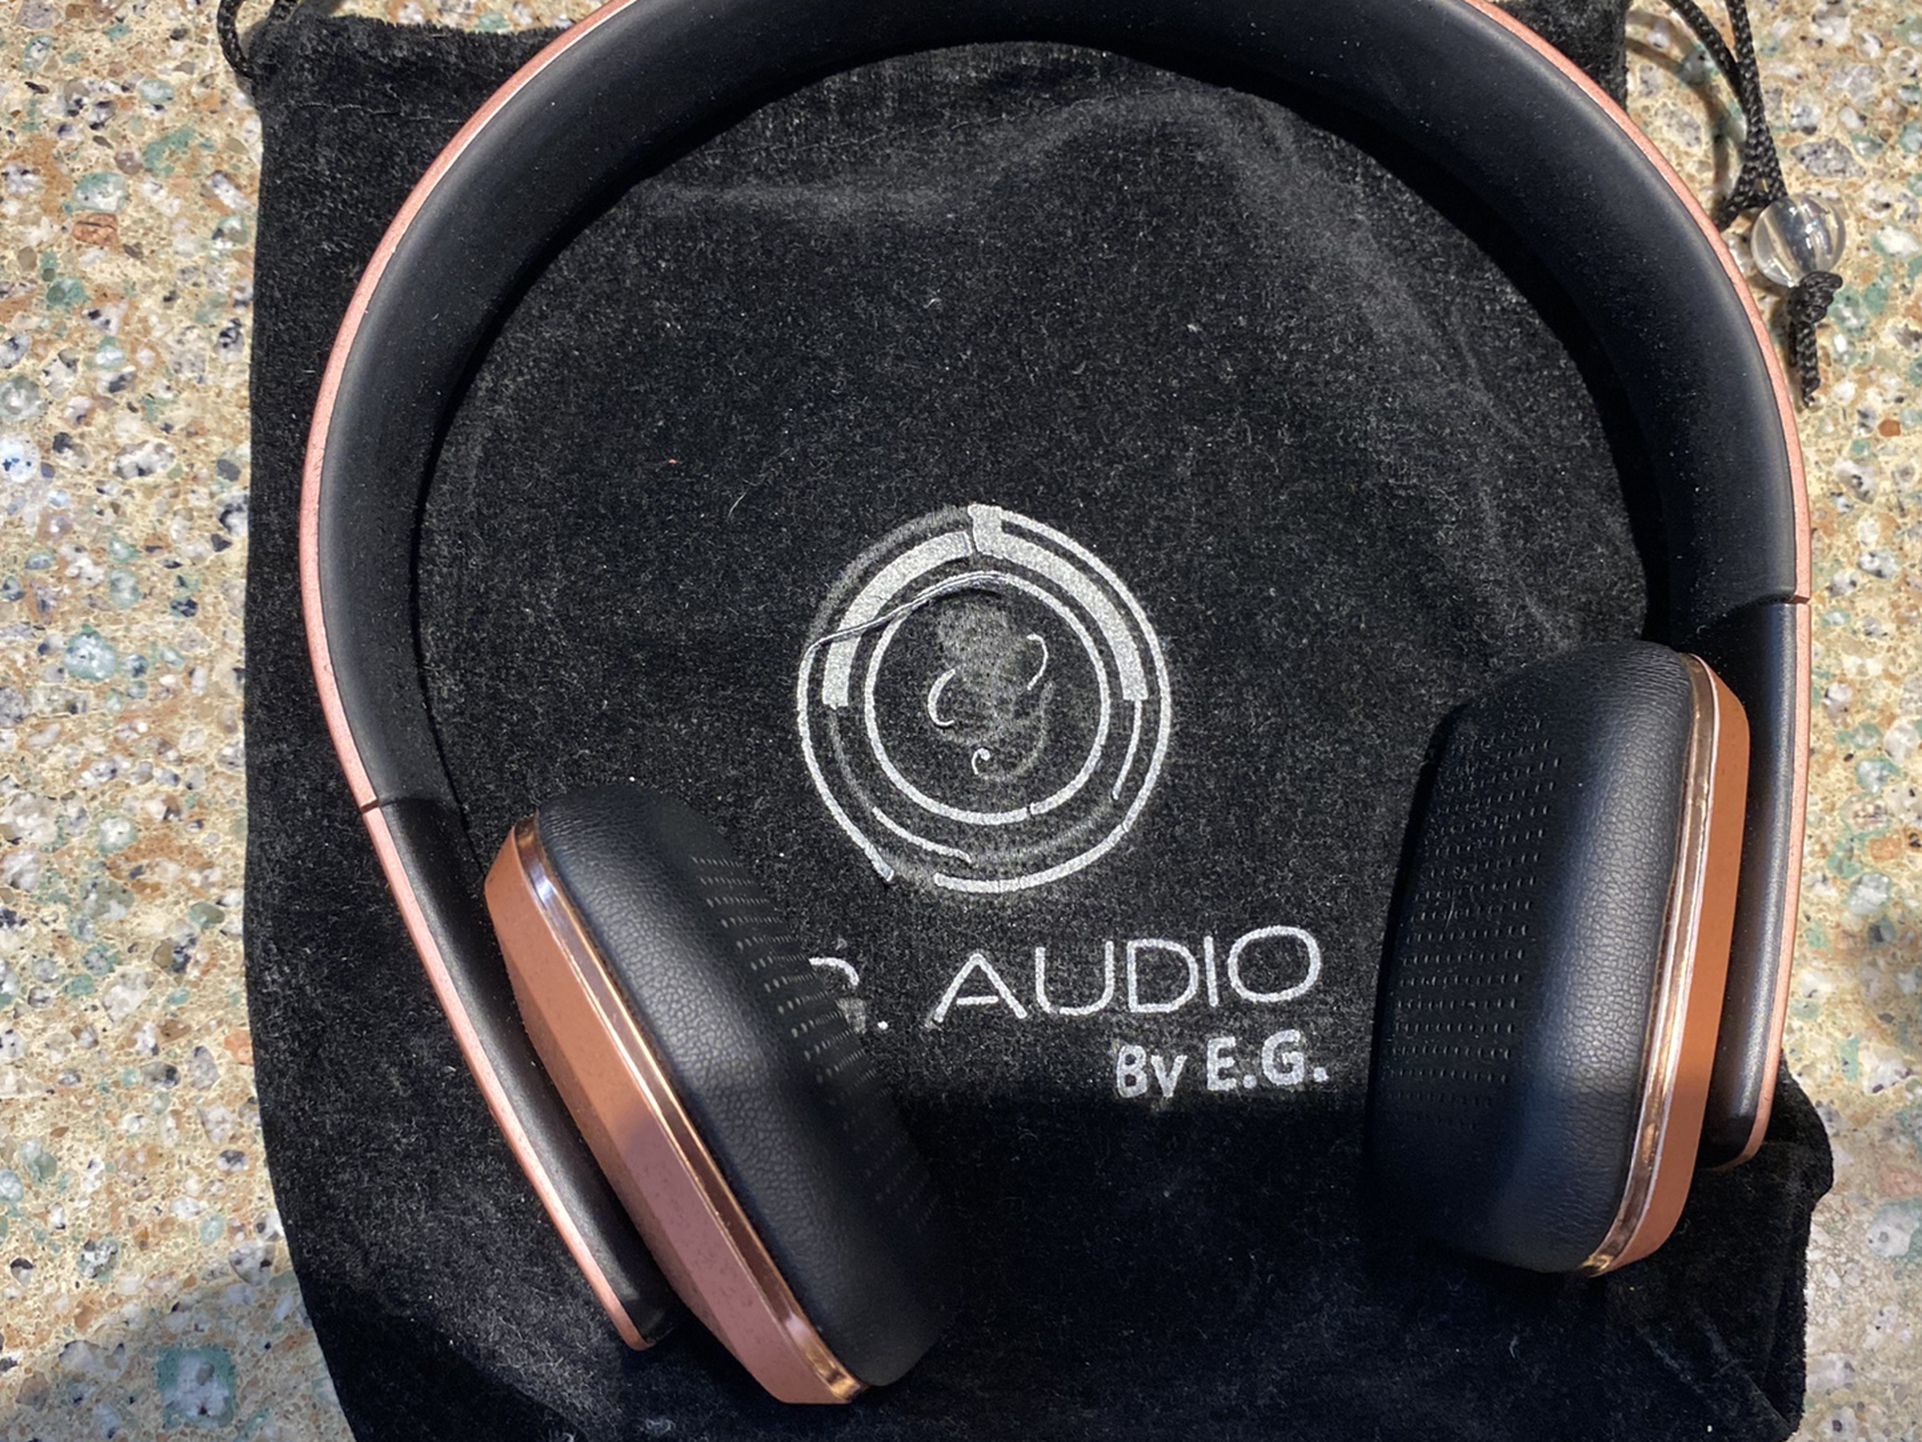 Audio Headphones By E. G.